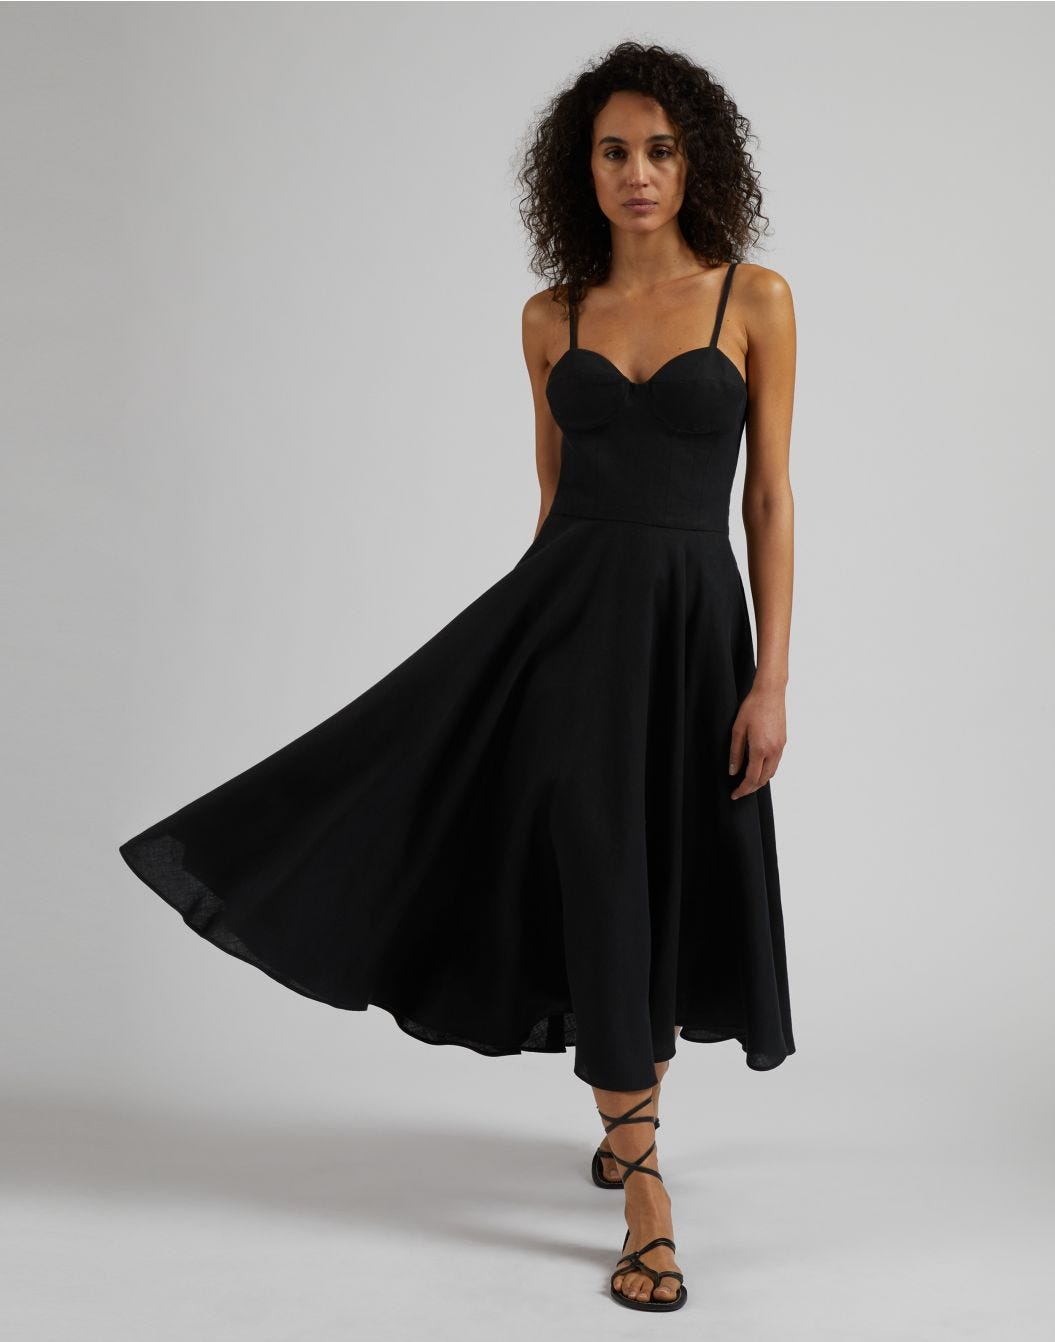 Robe en toile de lin couleur noire avec jupe mi-longue circulaire